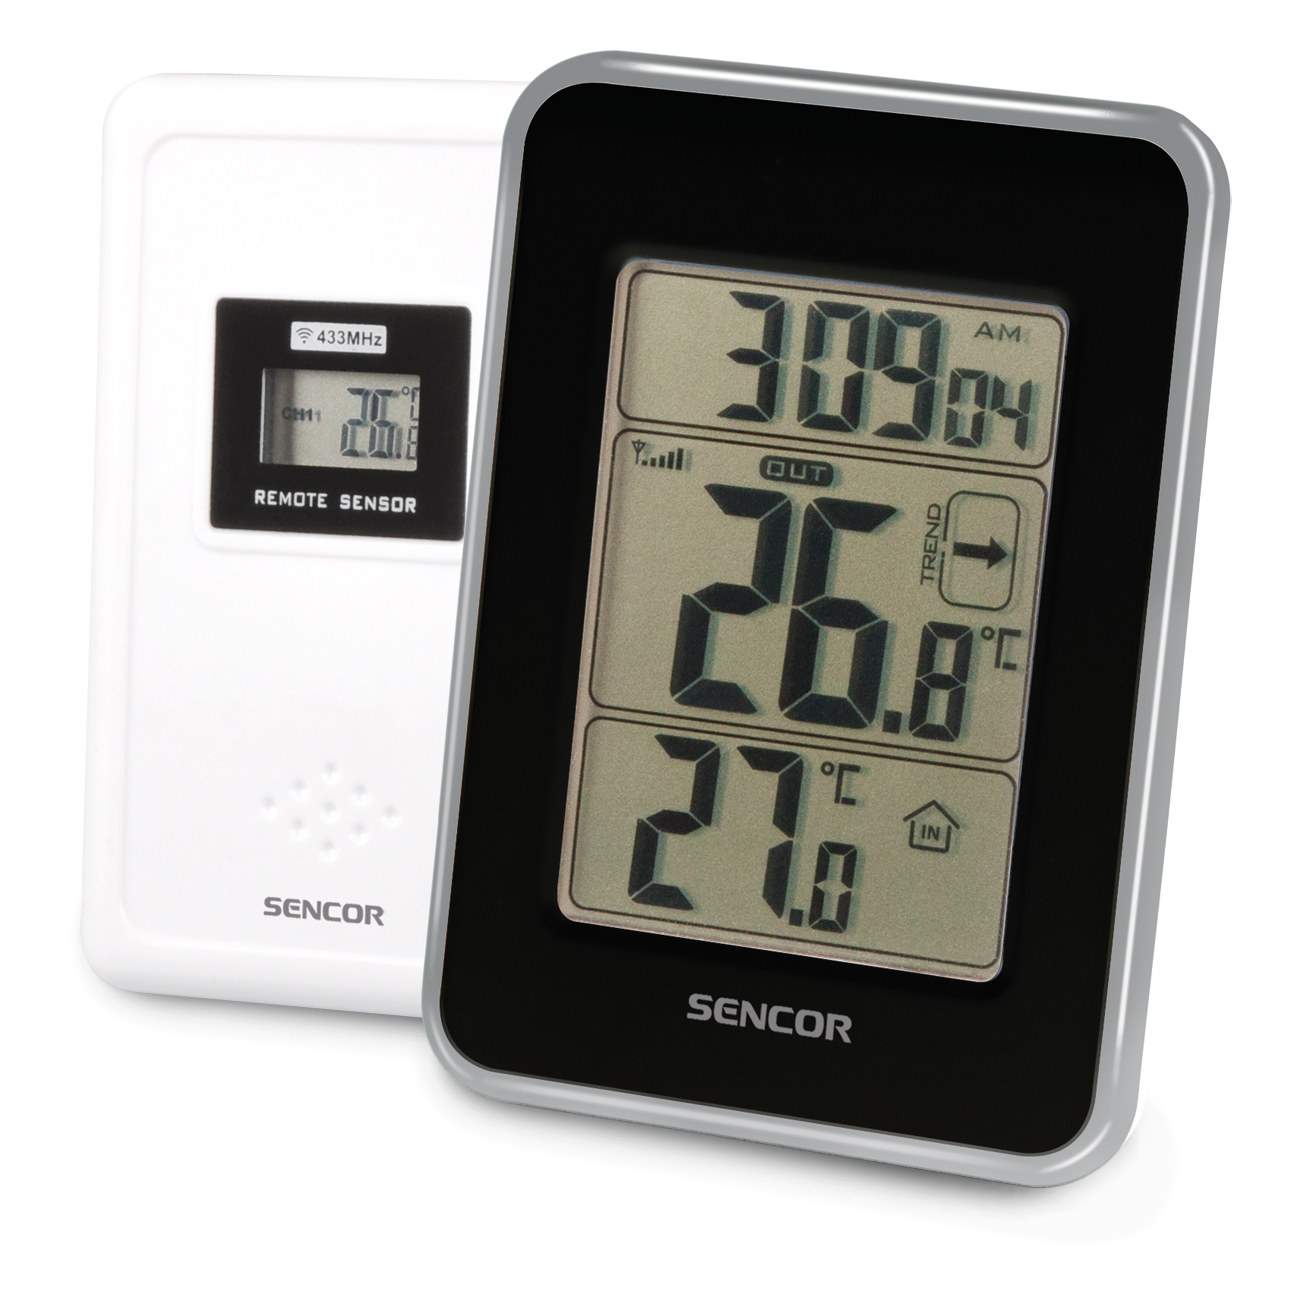 SWS 25 BS Безжичен термометър